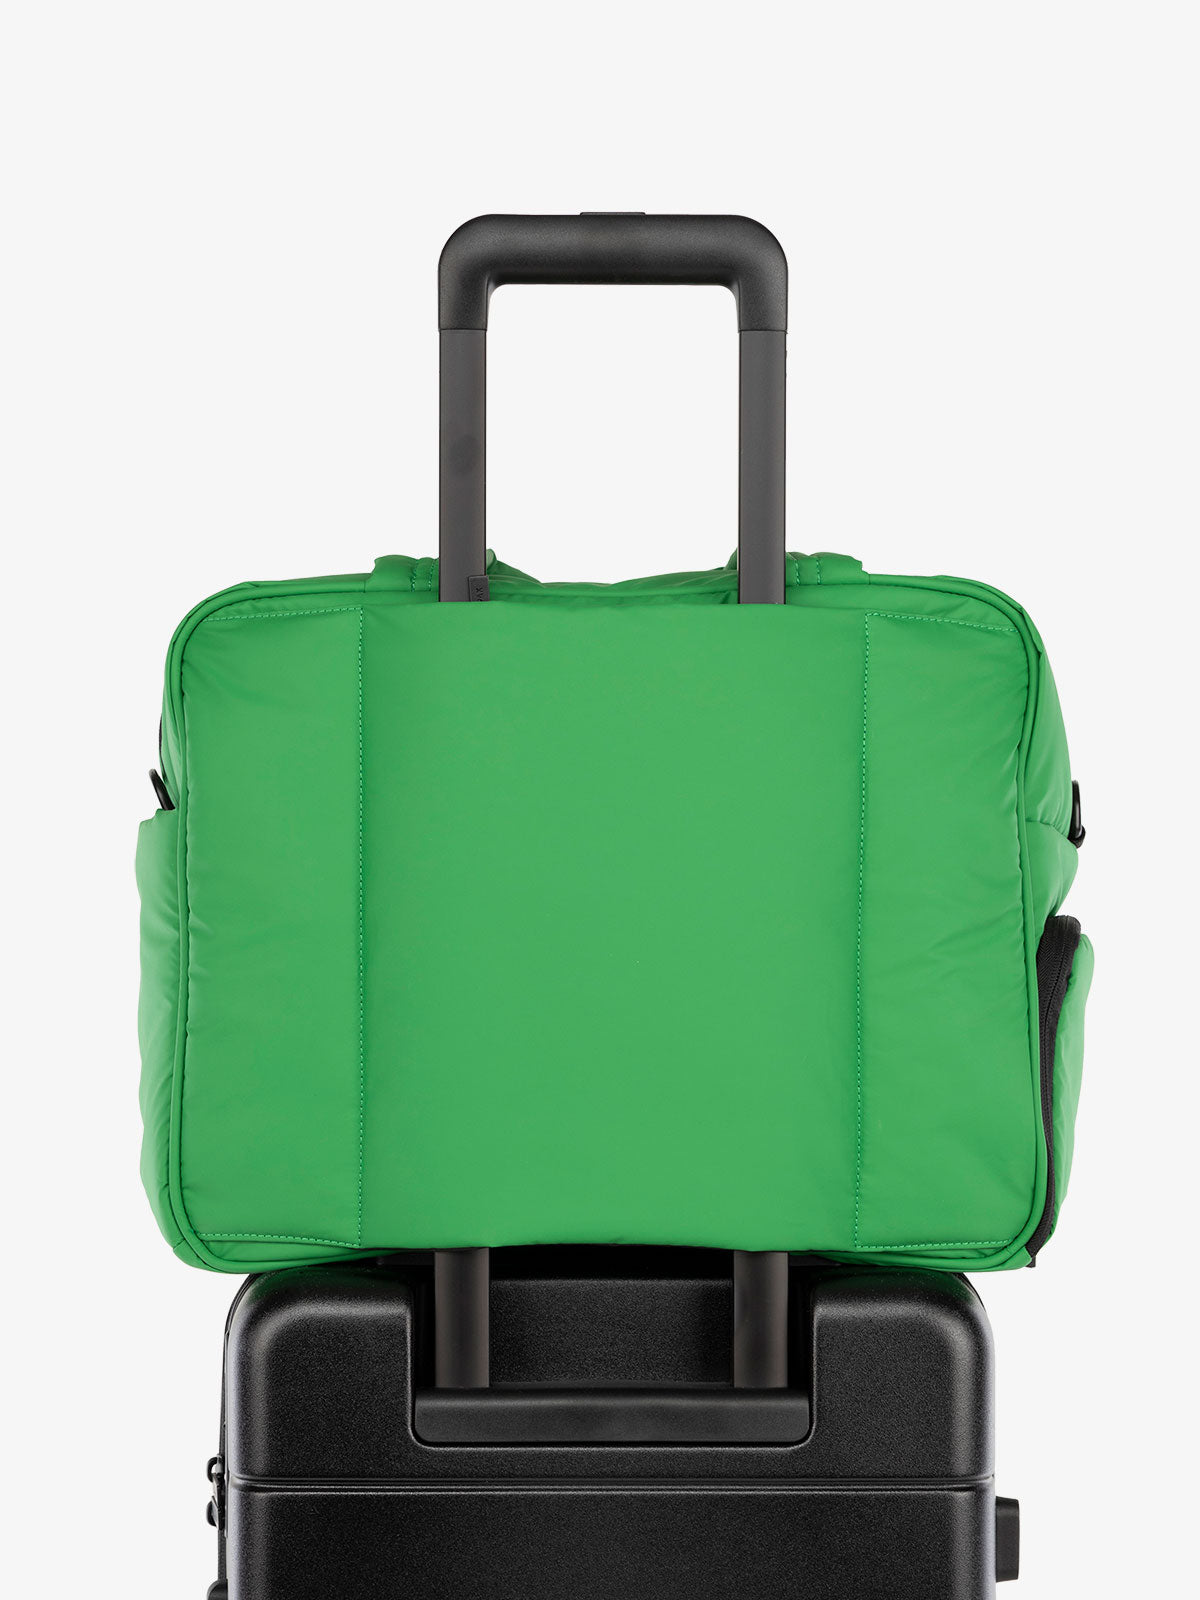 CALPAK Luka Weekender Duffel Bag with trolley sleeve for travel in green